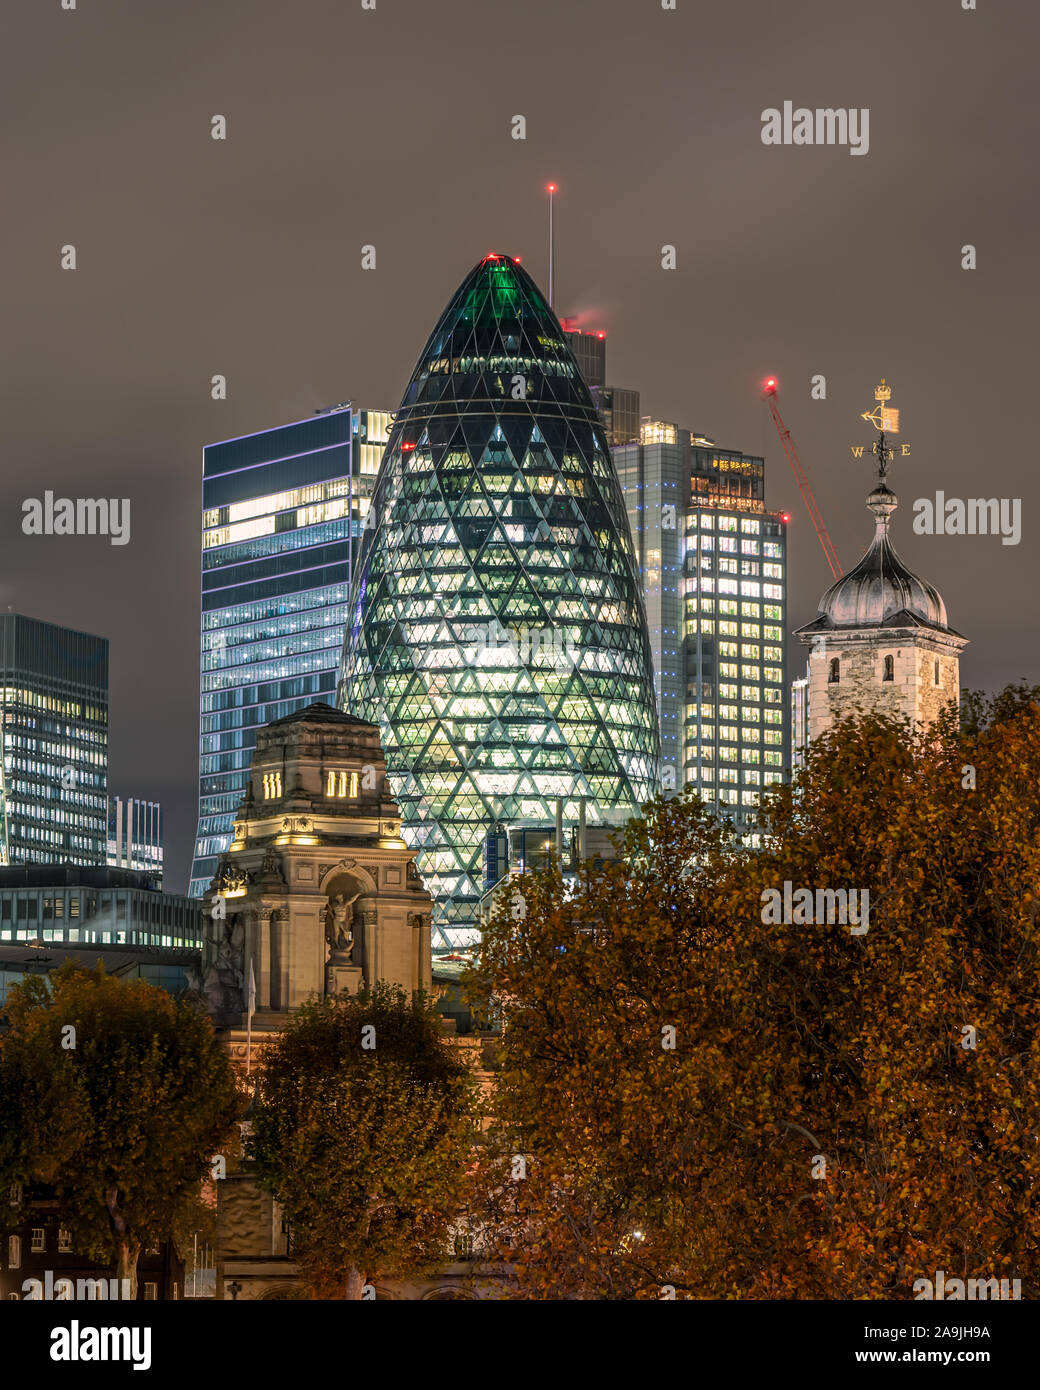 Notte cityscape circa London city quartiere degli affari Foto Stock